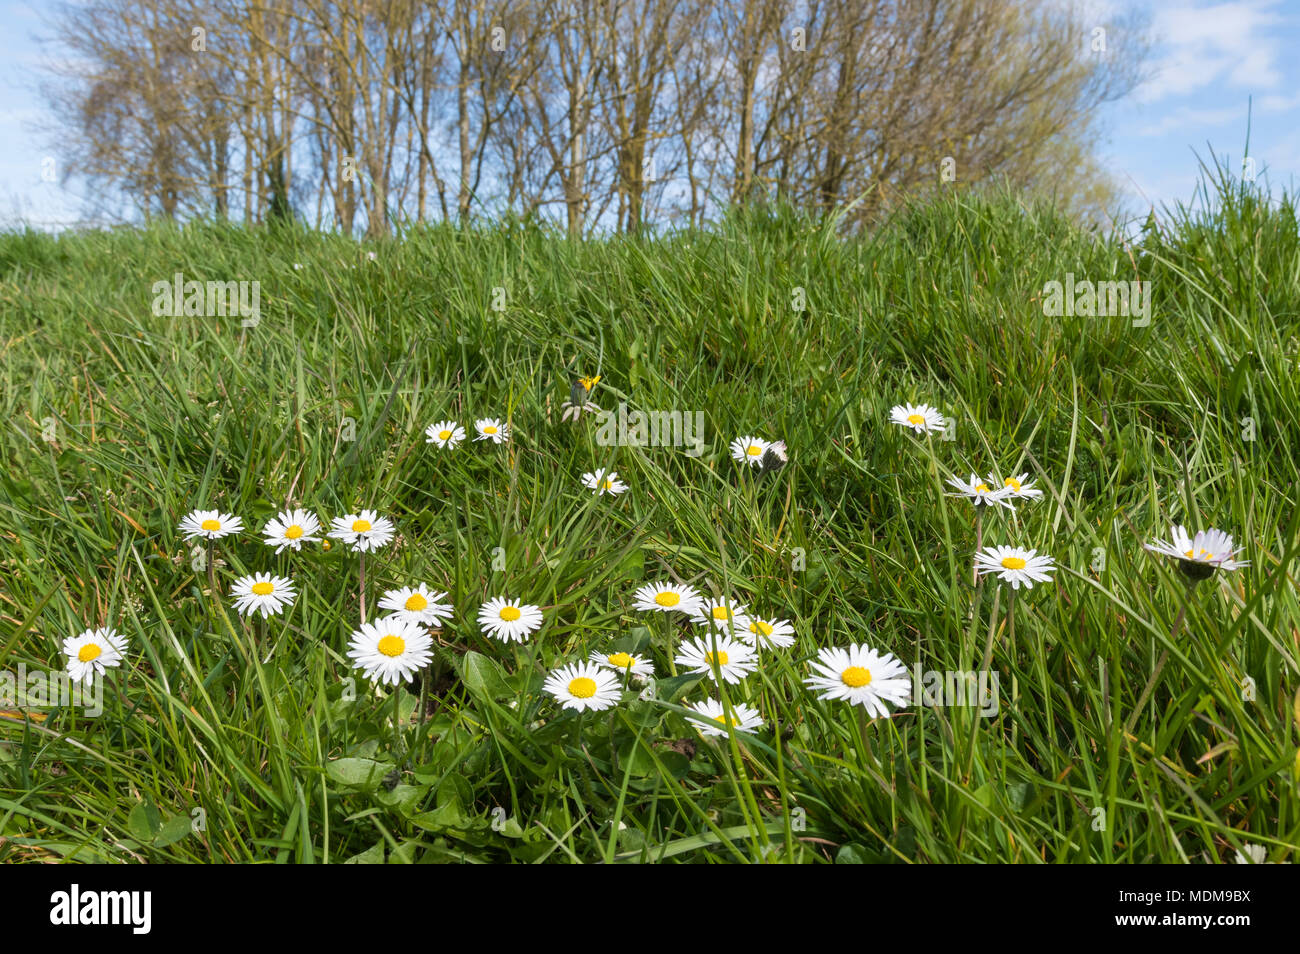 Comune di margherite (Bellis perennis, Prato margherite) cresce in un parco  su una zona collinare banca di erba in primavera nel Regno Unito Foto stock  - Alamy